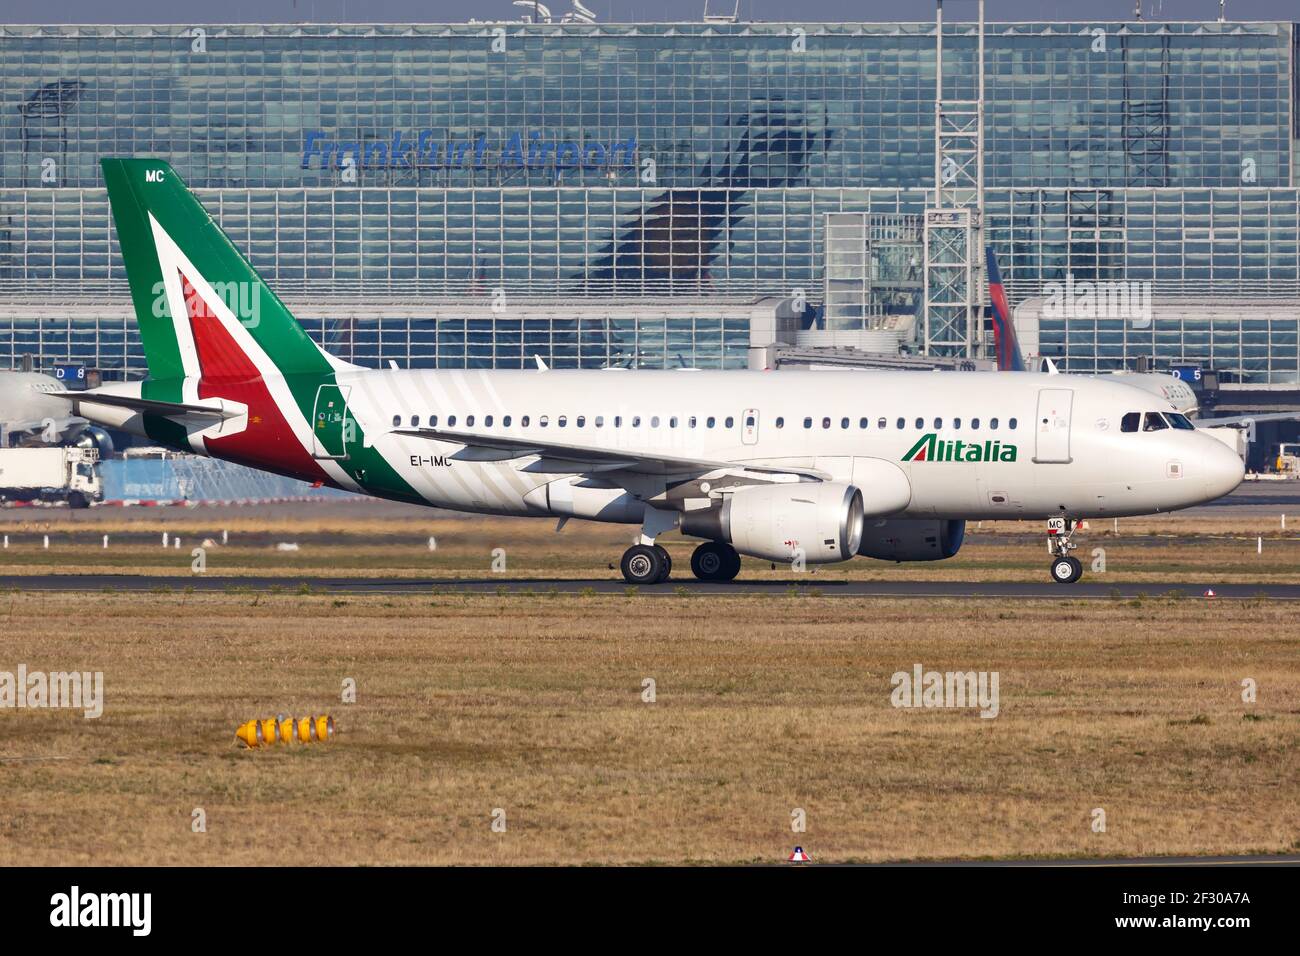 Francoforte, Germania - 16 ottobre 2018: Aereo Alitalia Airbus A319 all'aeroporto di Francoforte (fra) in Germania. Airbus è un produttore europeo di aeromobili Foto Stock